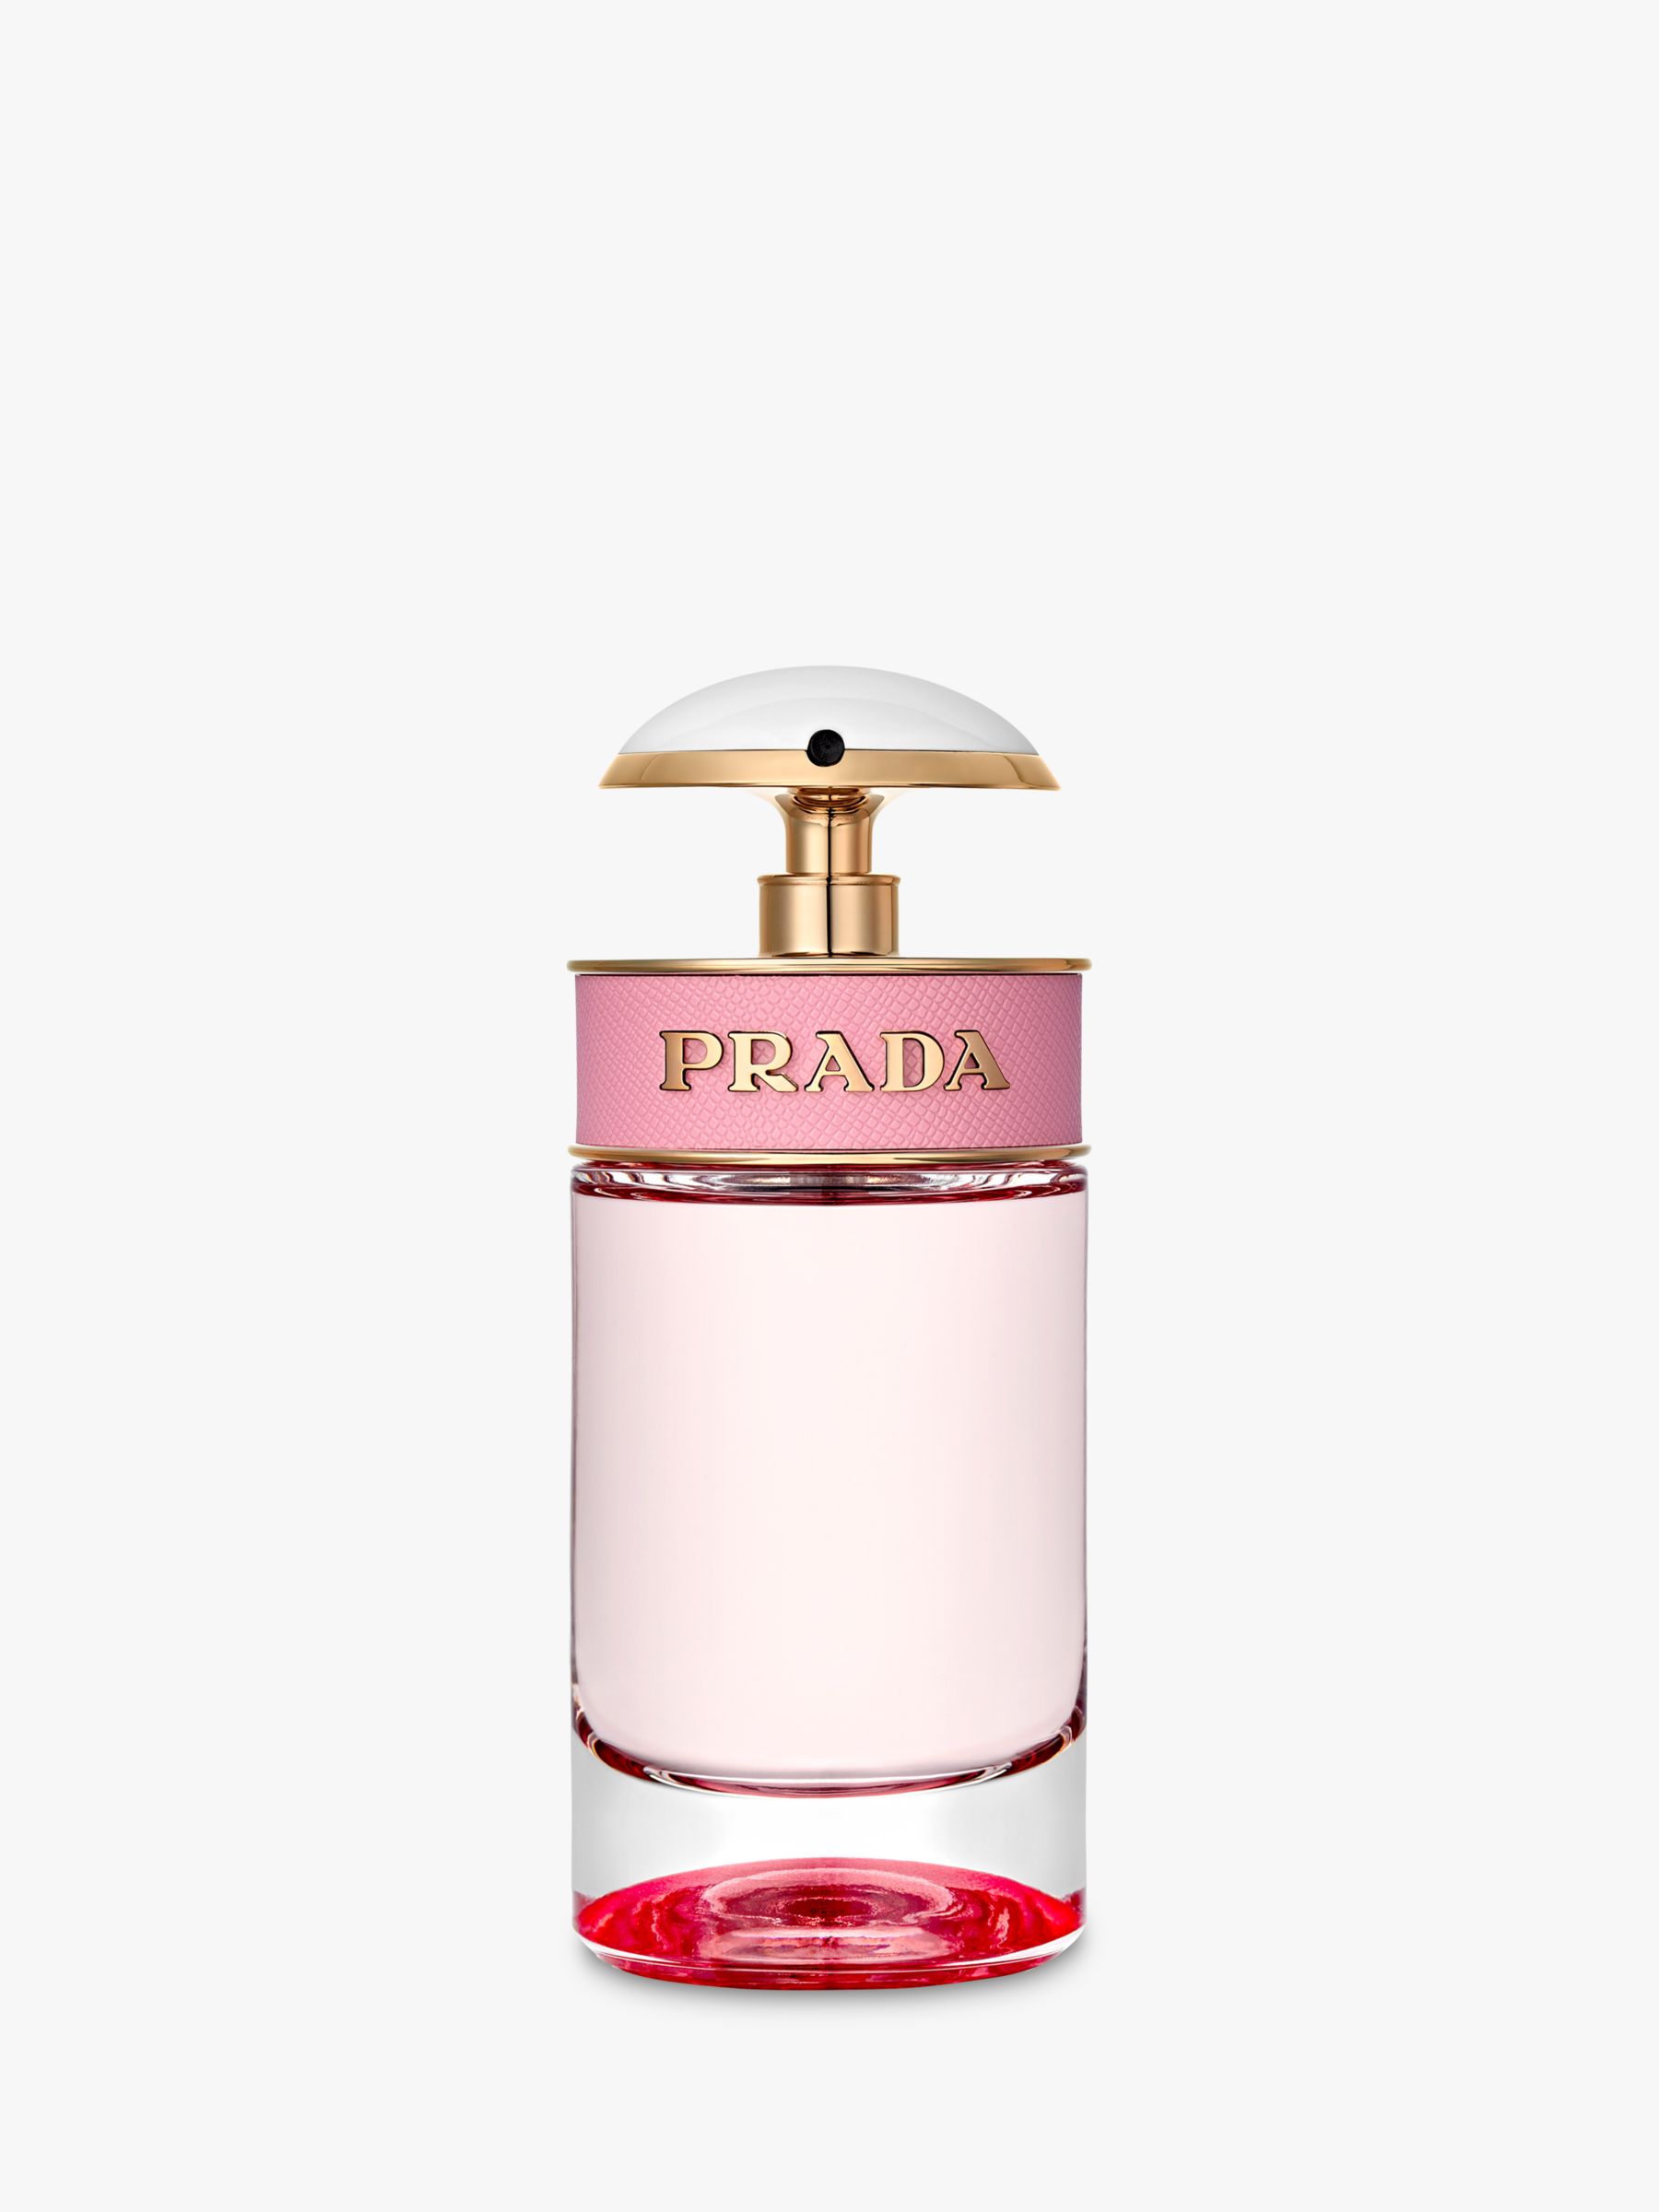 price of prada perfume